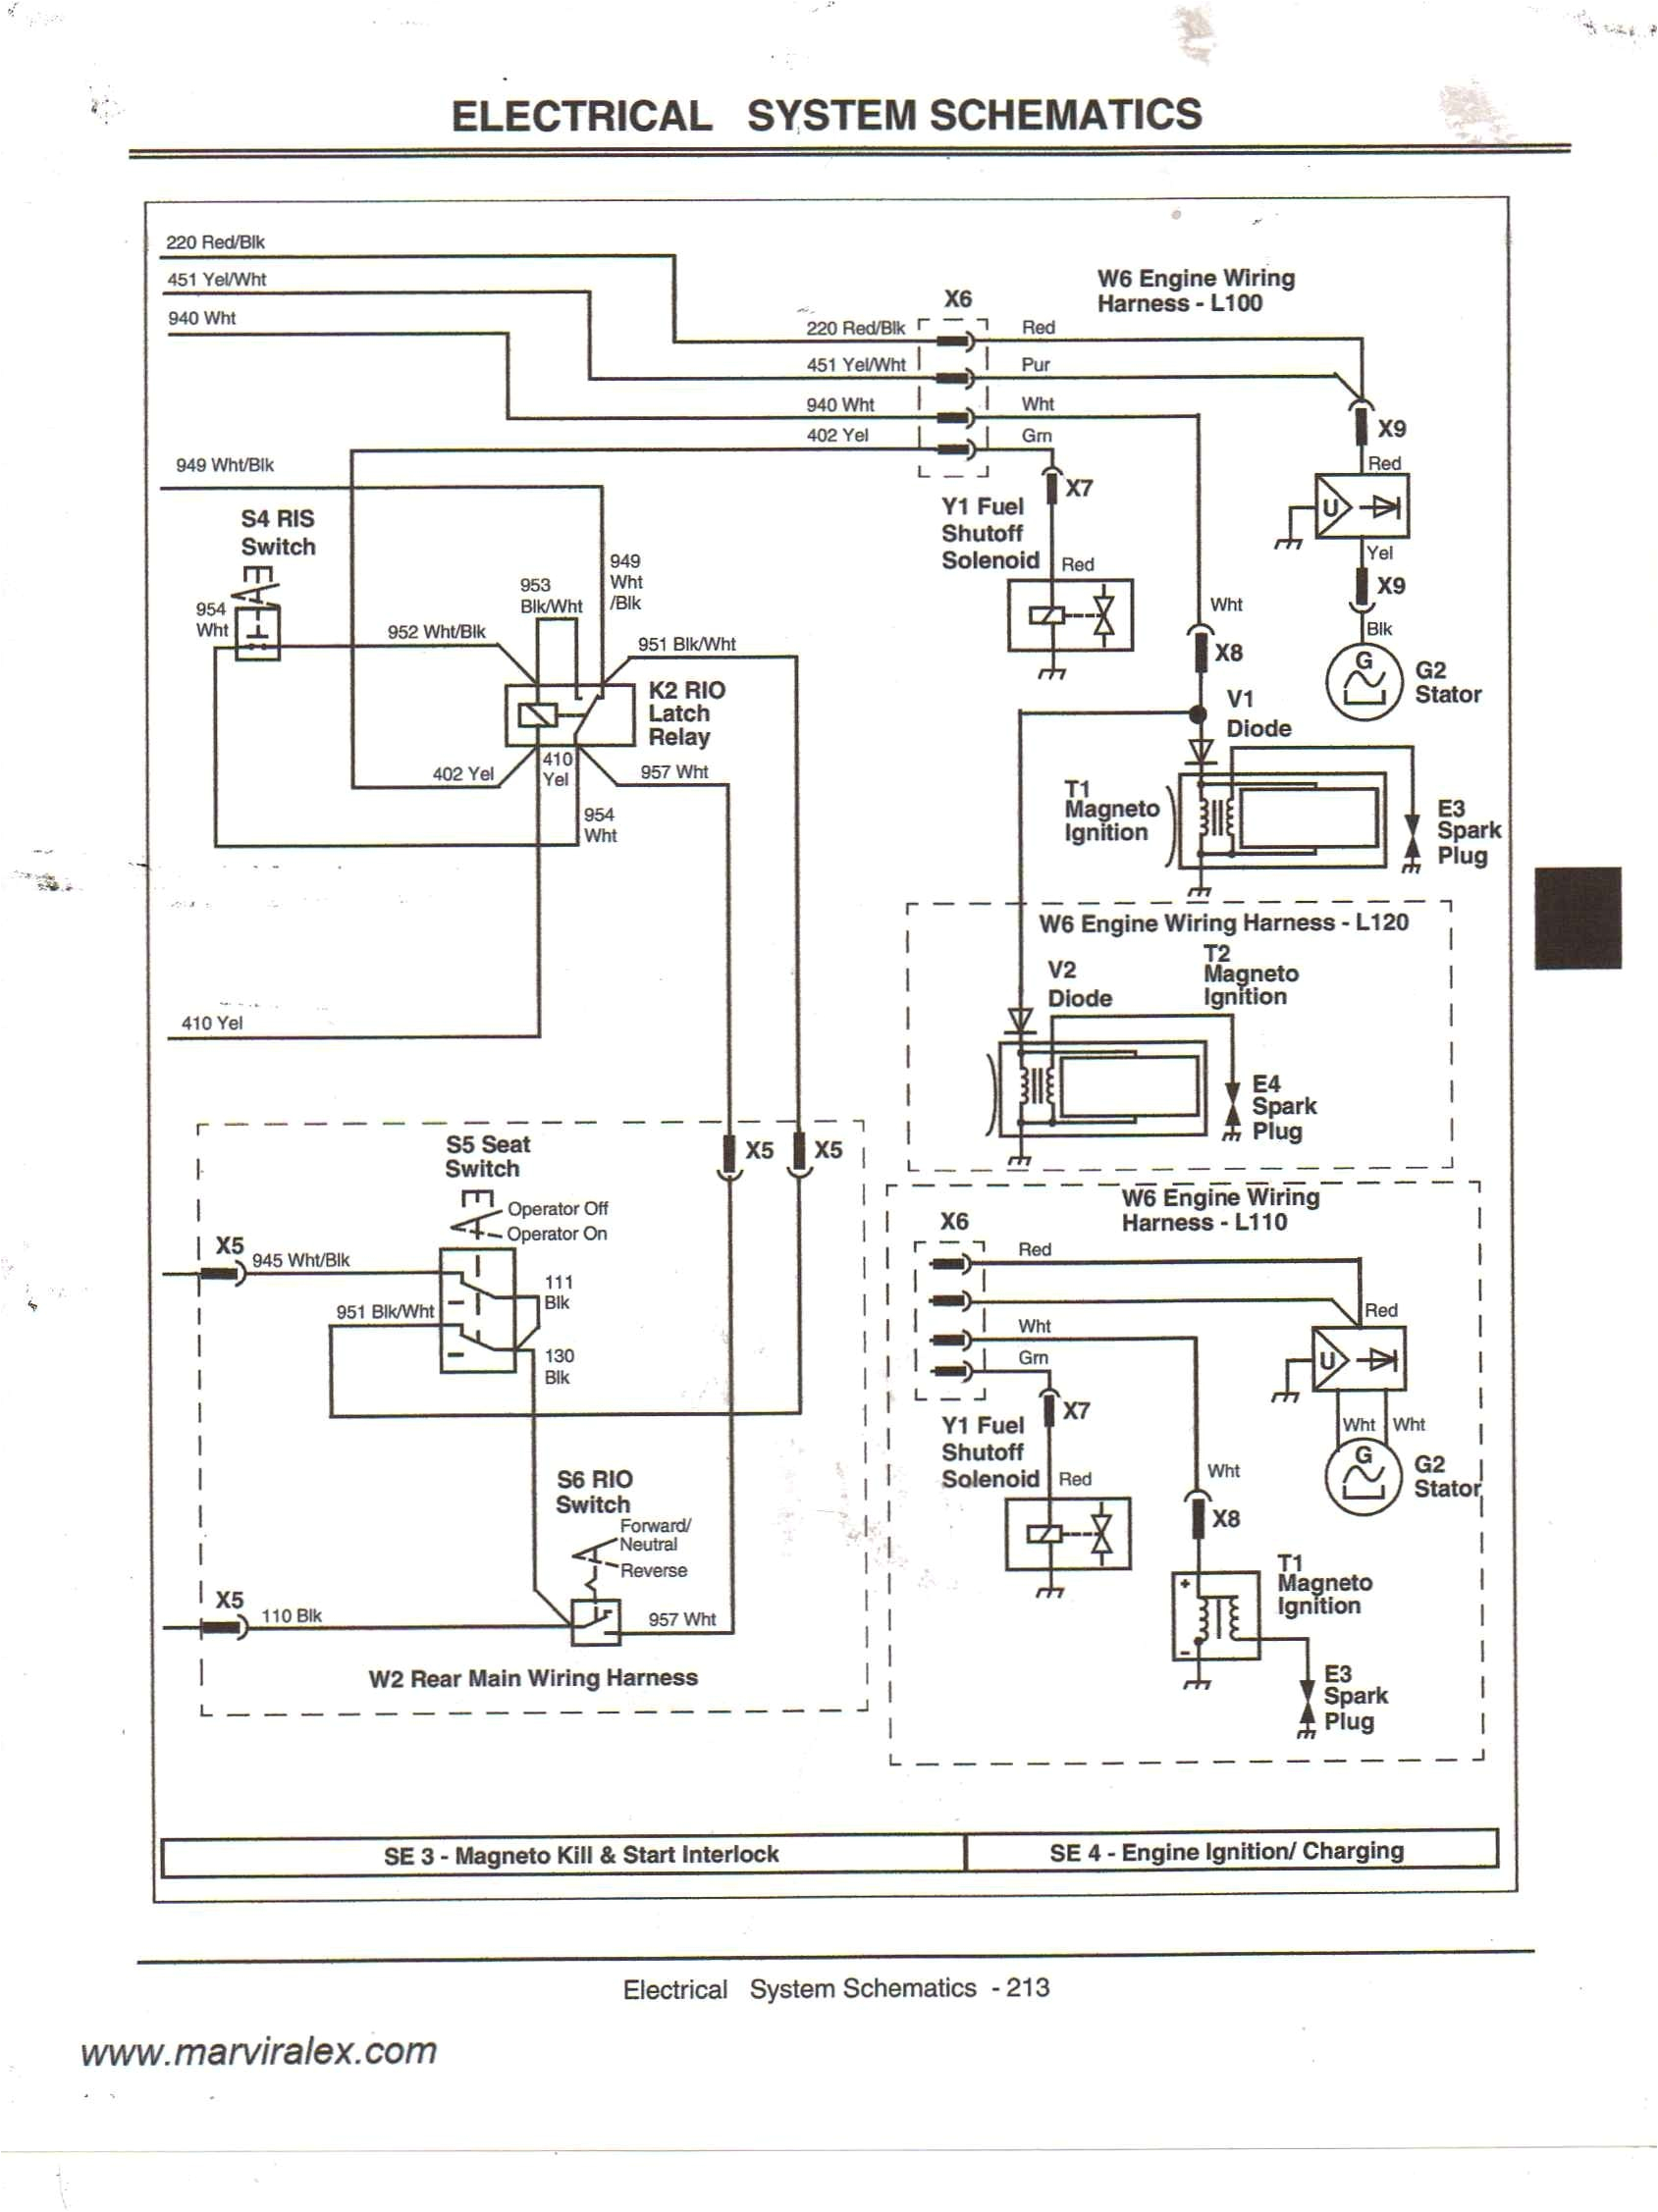 mahindra 2615 tractor wiring diagram wiring diagram local mahindra 2615 wiring diagram wiring diagram basic mahindra